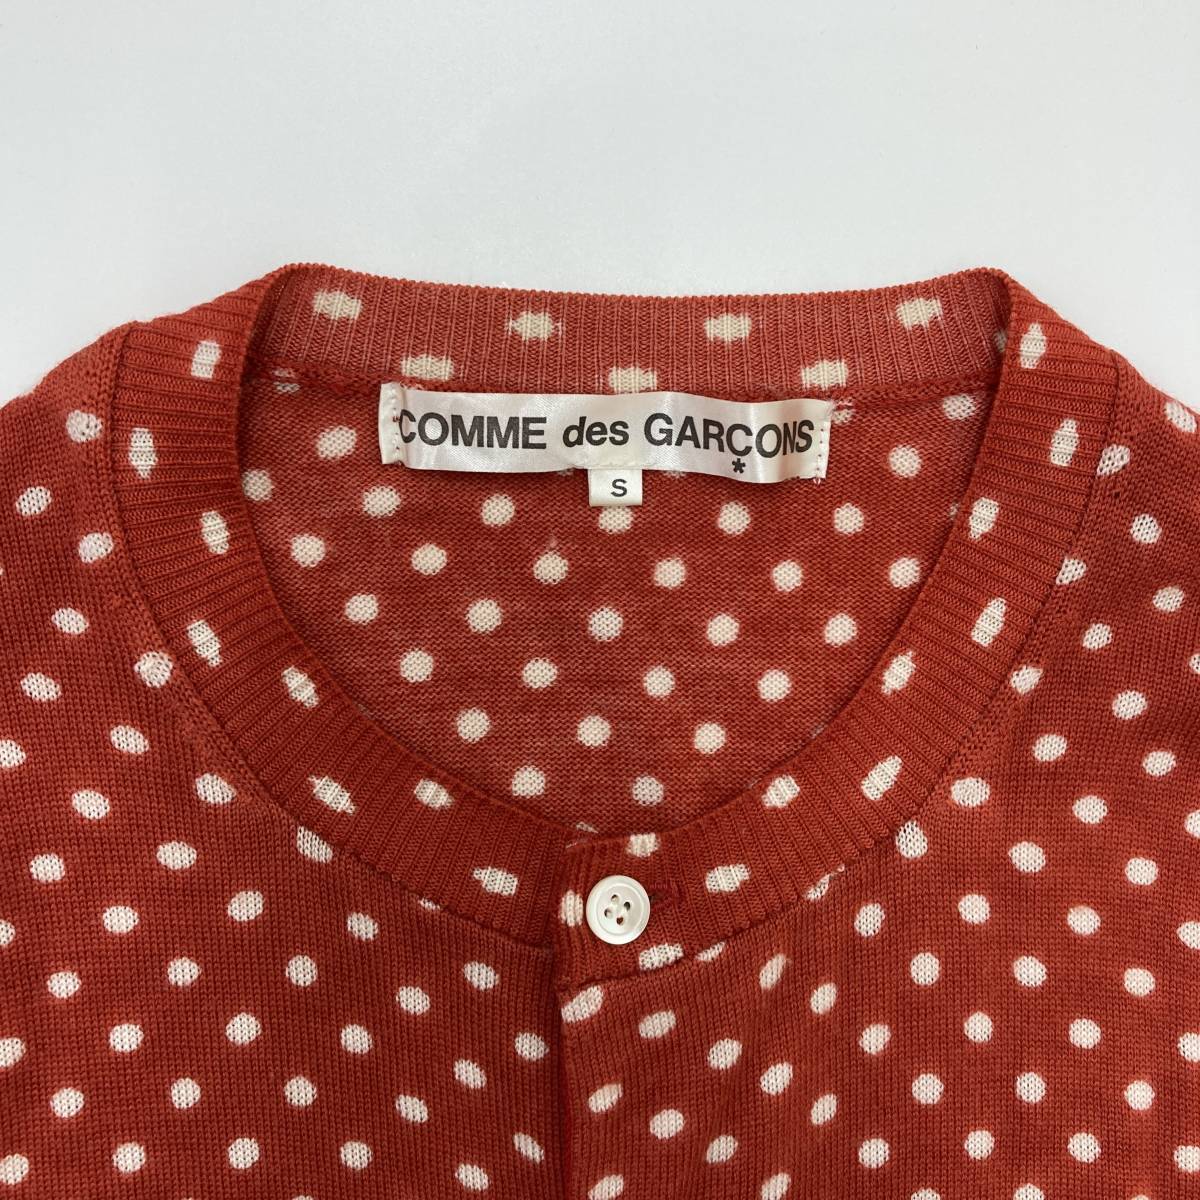 AD2005 COMME des GARCONS стандартный точка вязаный кардиган красный S размер Comme des Garcons свитер полька-дот archive 3080633